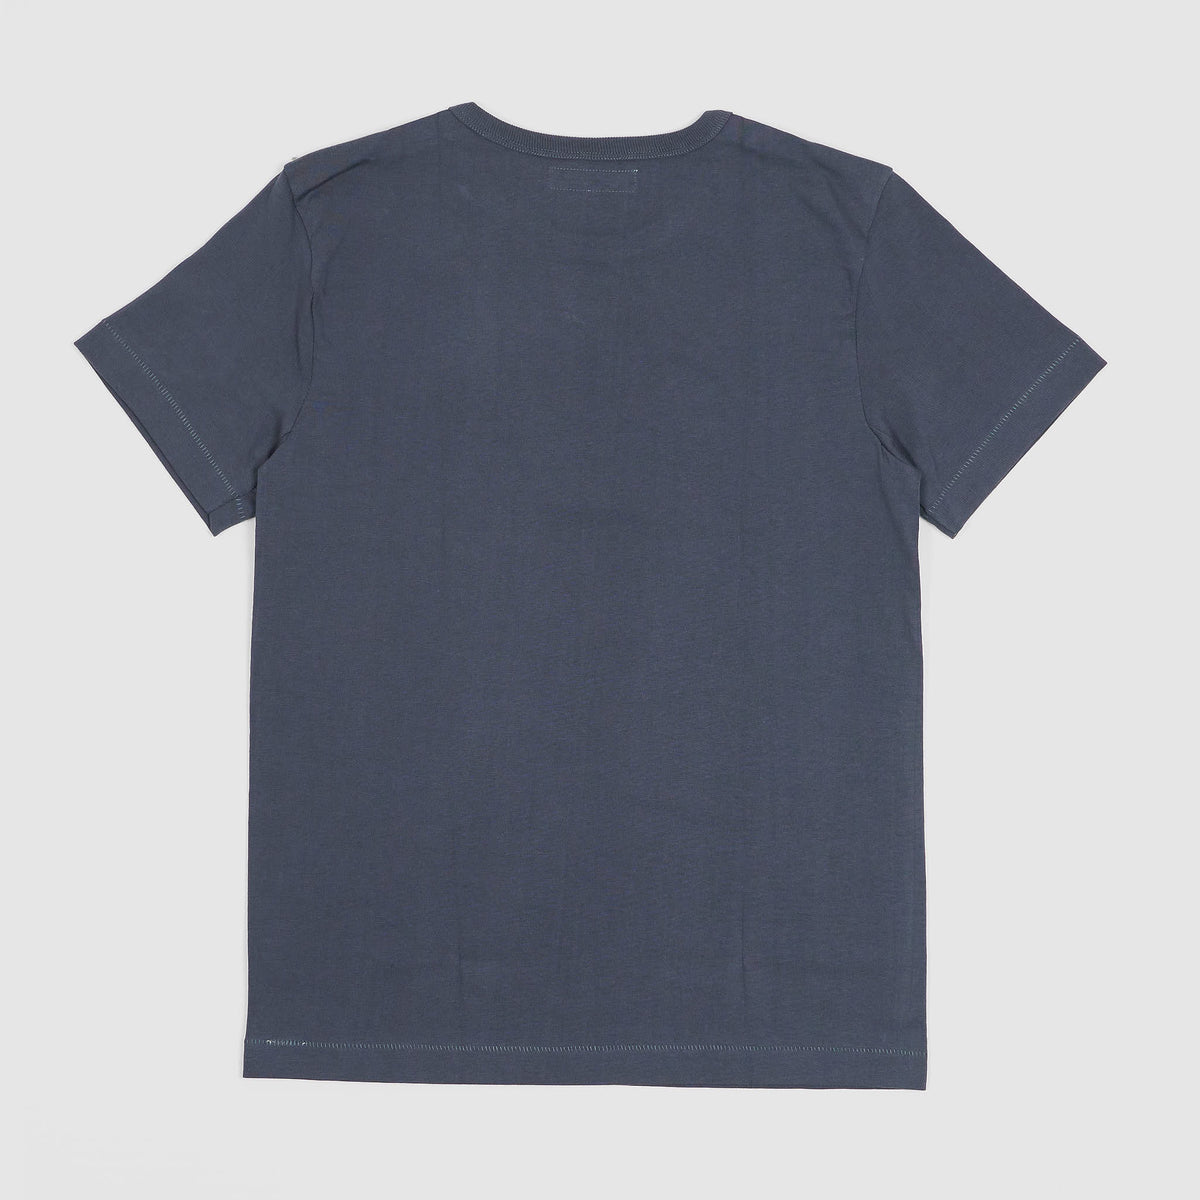 Merz b.Schwanen Soft Organic Cotton Loop Wheeler Short Sleeves T-Shirt Navy